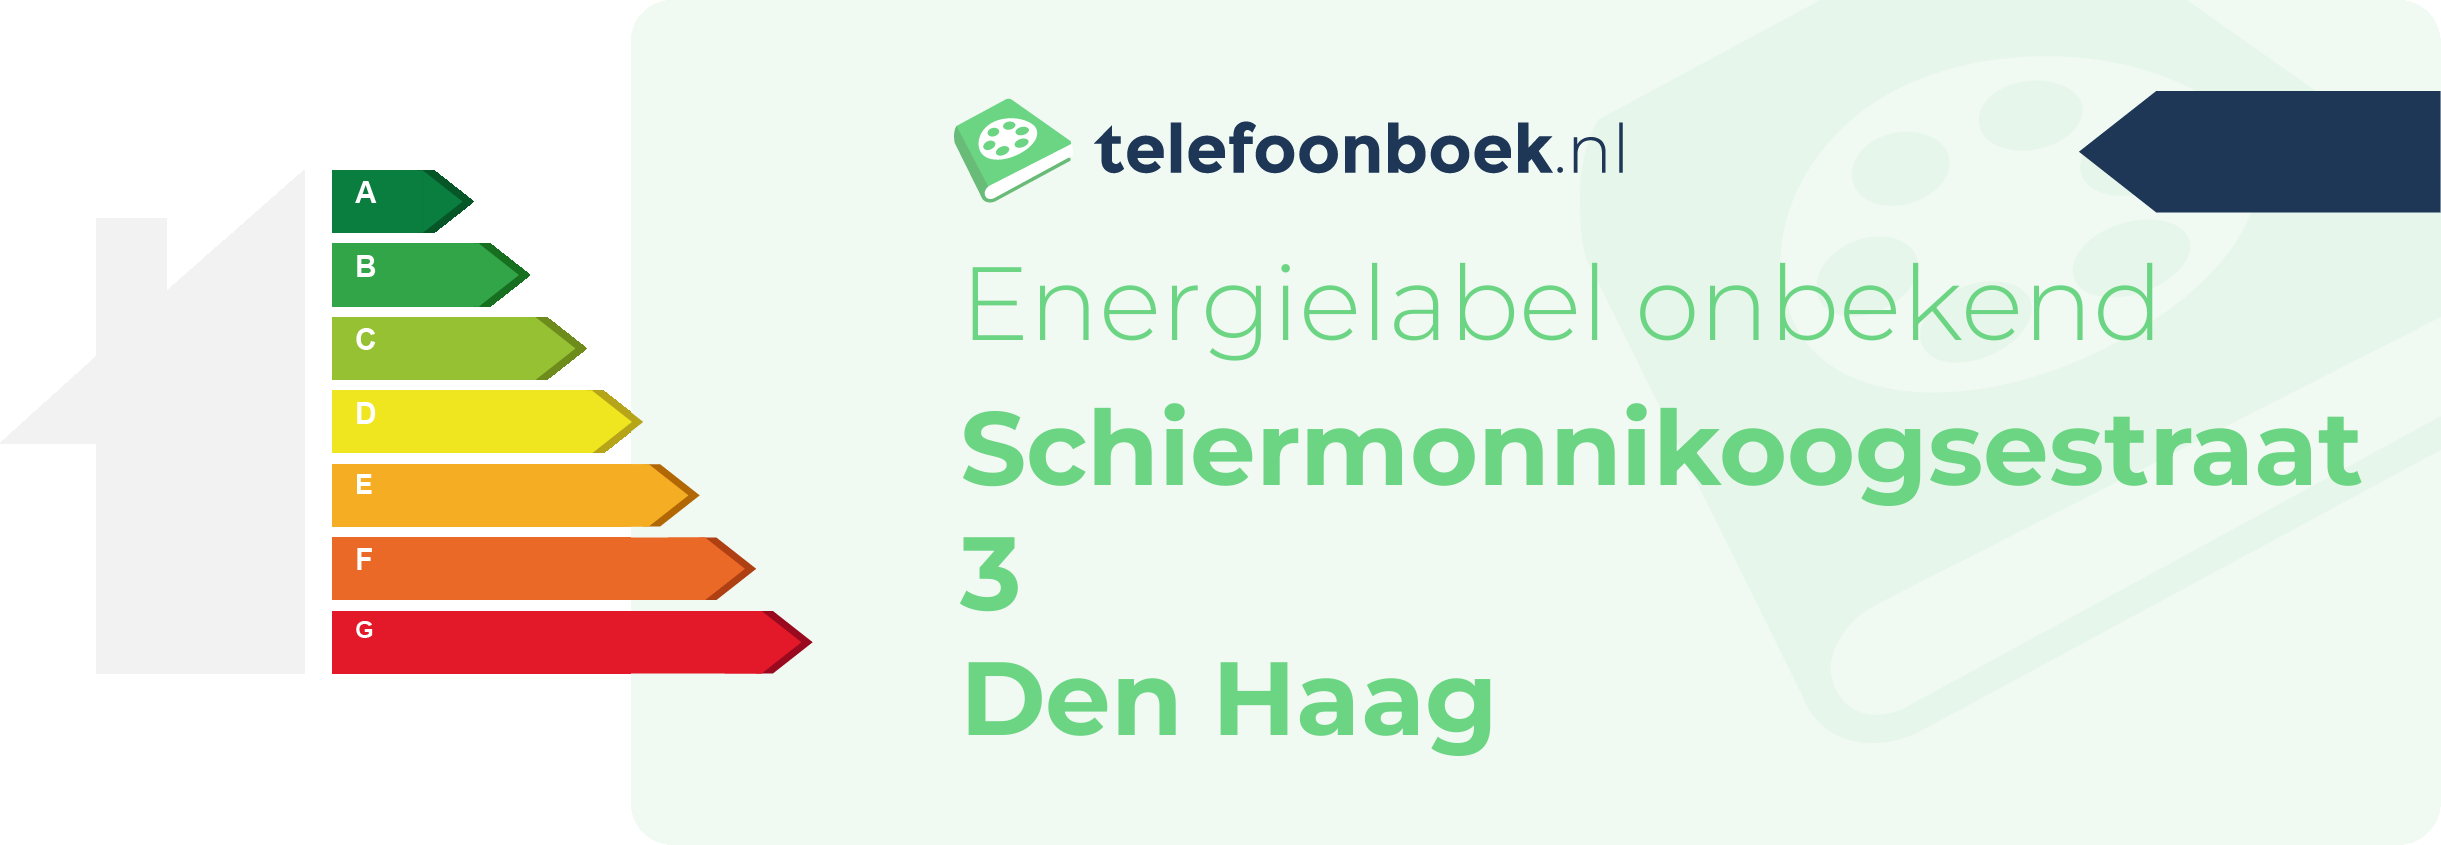 Energielabel Schiermonnikoogsestraat 3 Den Haag